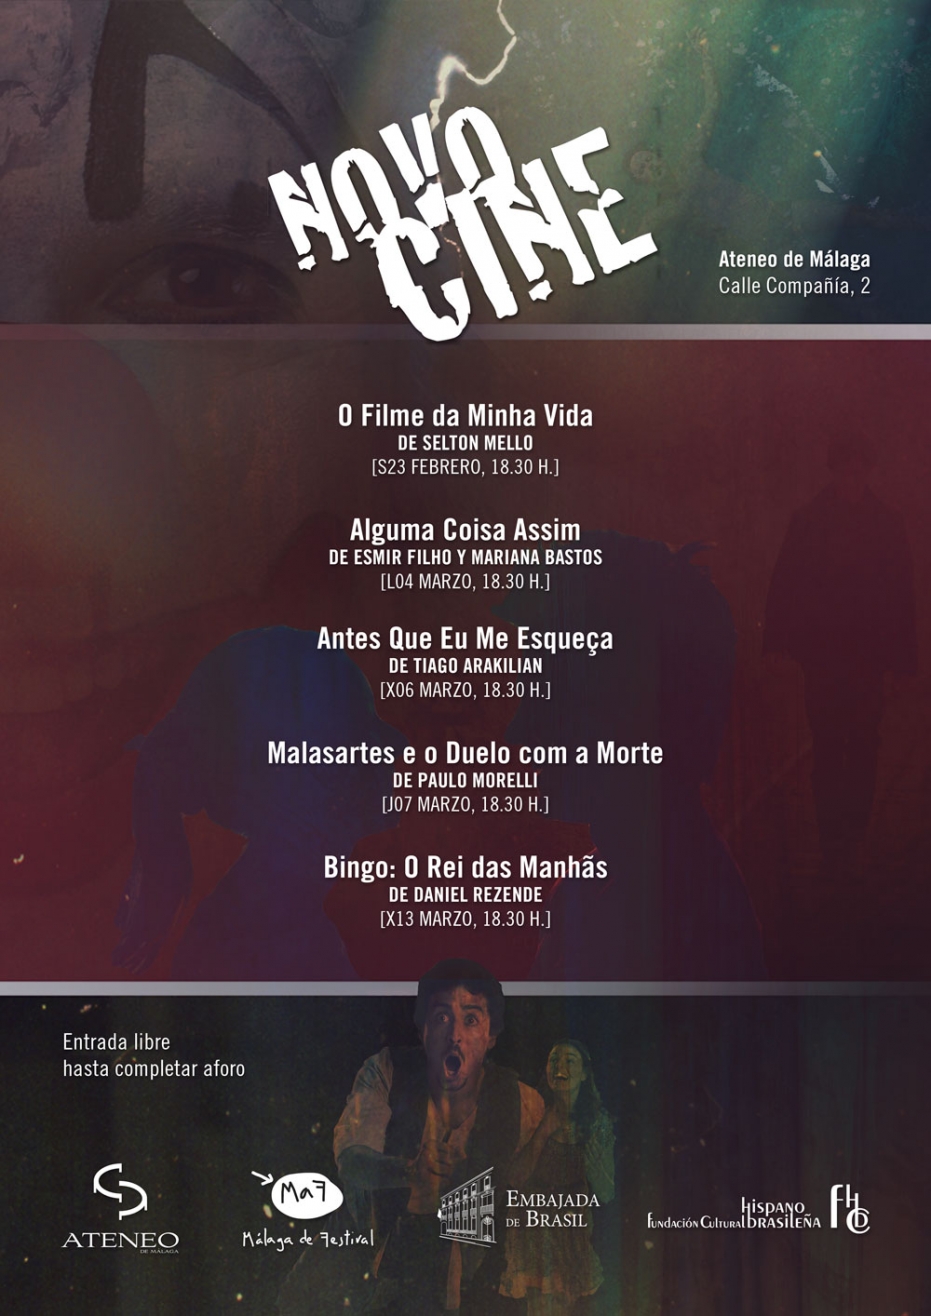 II Ciclo de Cine Novocine: proyección de 'Malasartes e o Duelo com a Morte', de Paulo Morelli. En colaboración con la Embajada de Brasil y la Fundación Cultural Hispano Brasileña